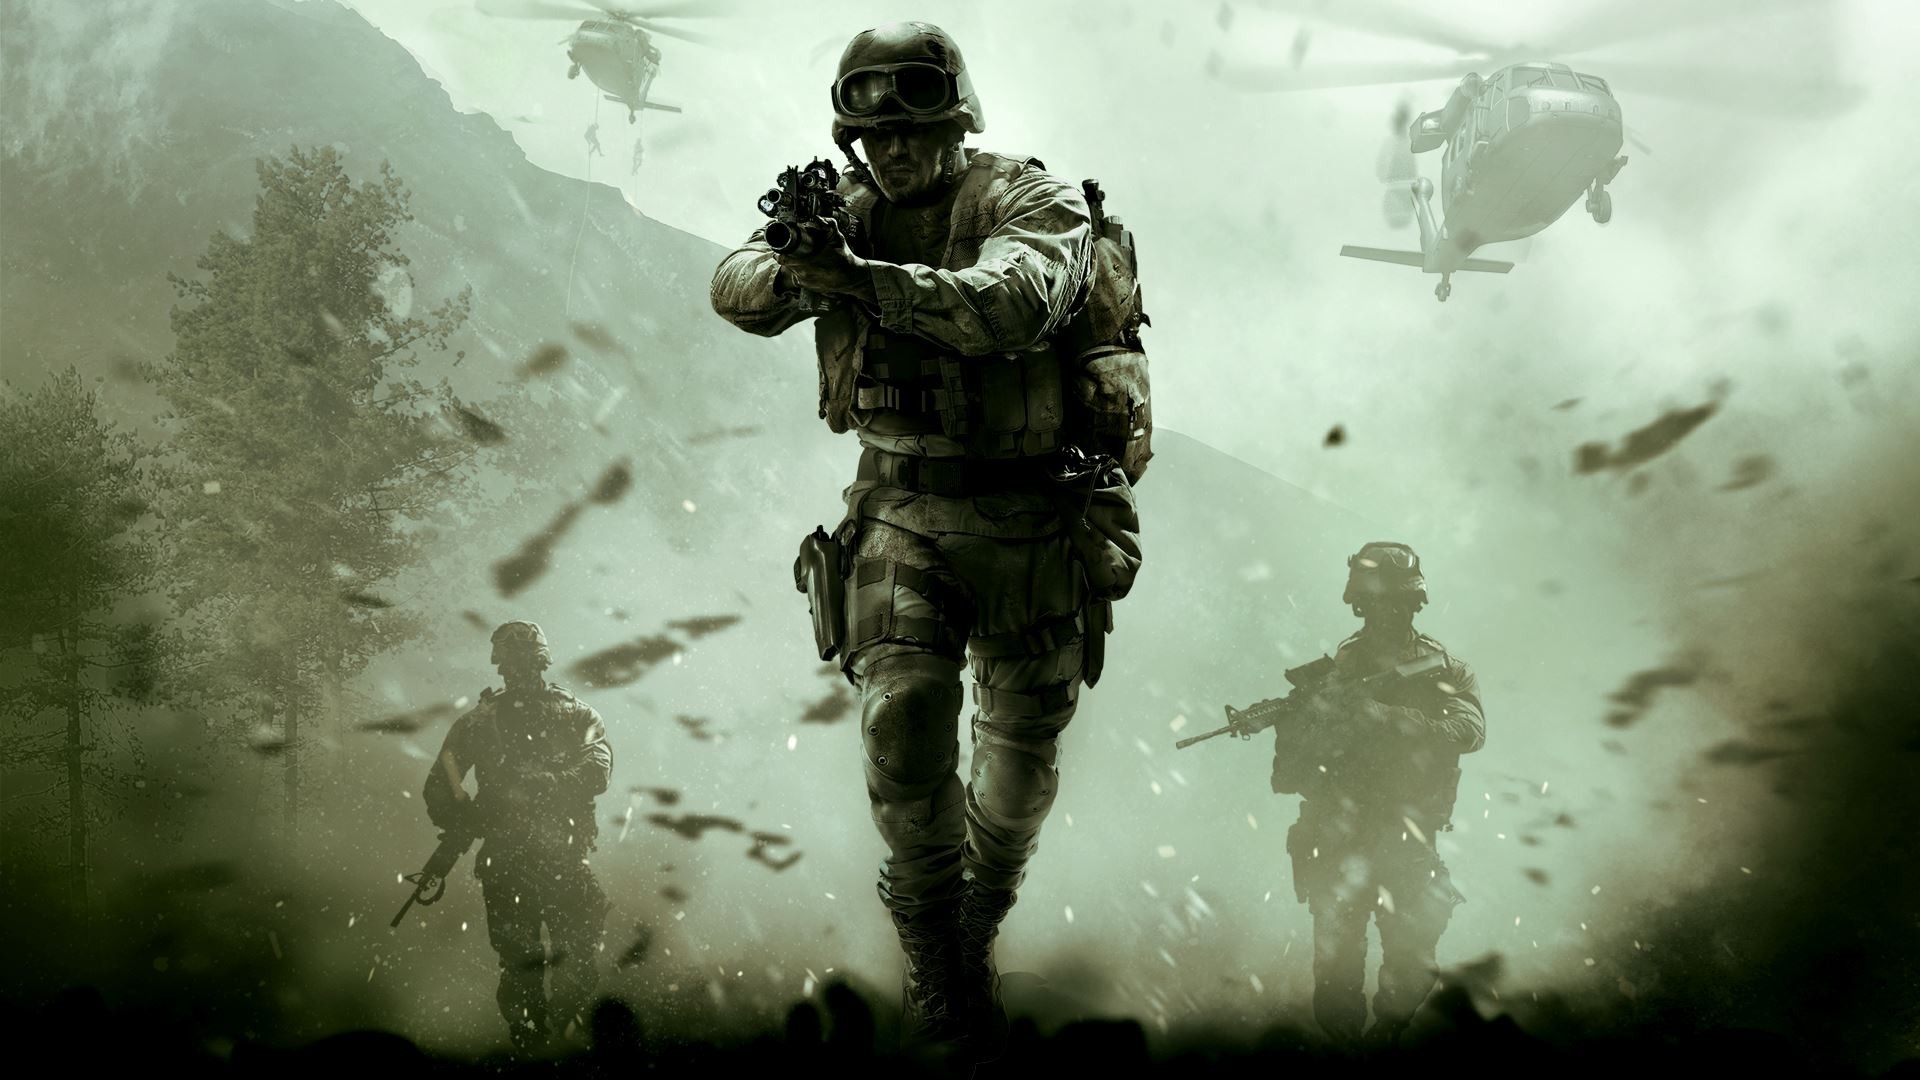 Melhores papéis de parede de Call Of Duty: Modern Warfare Remastered para tela do telefone